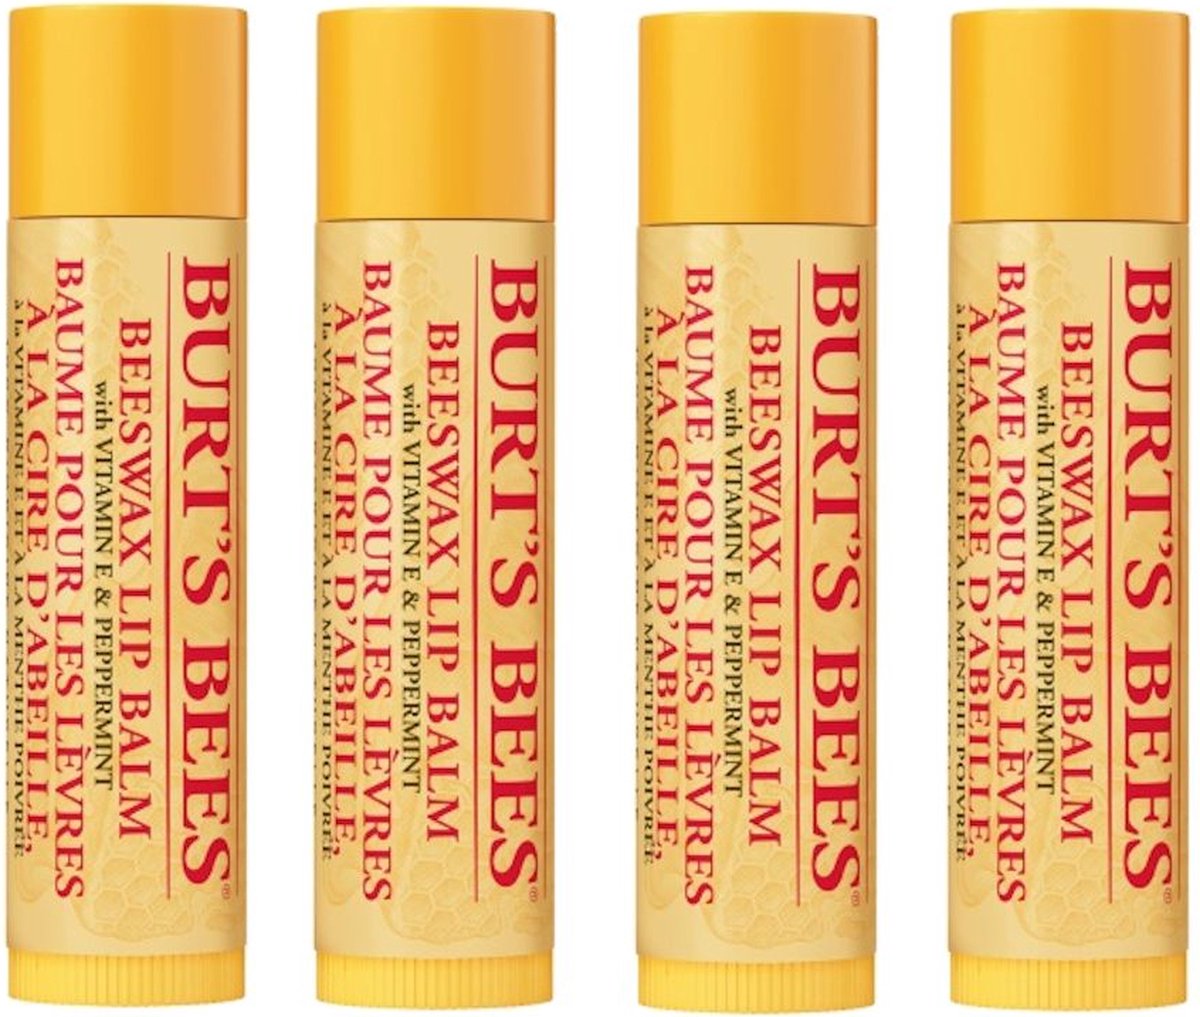 BURT'S BEES - Lip Balm Beeswax - 4 Pak